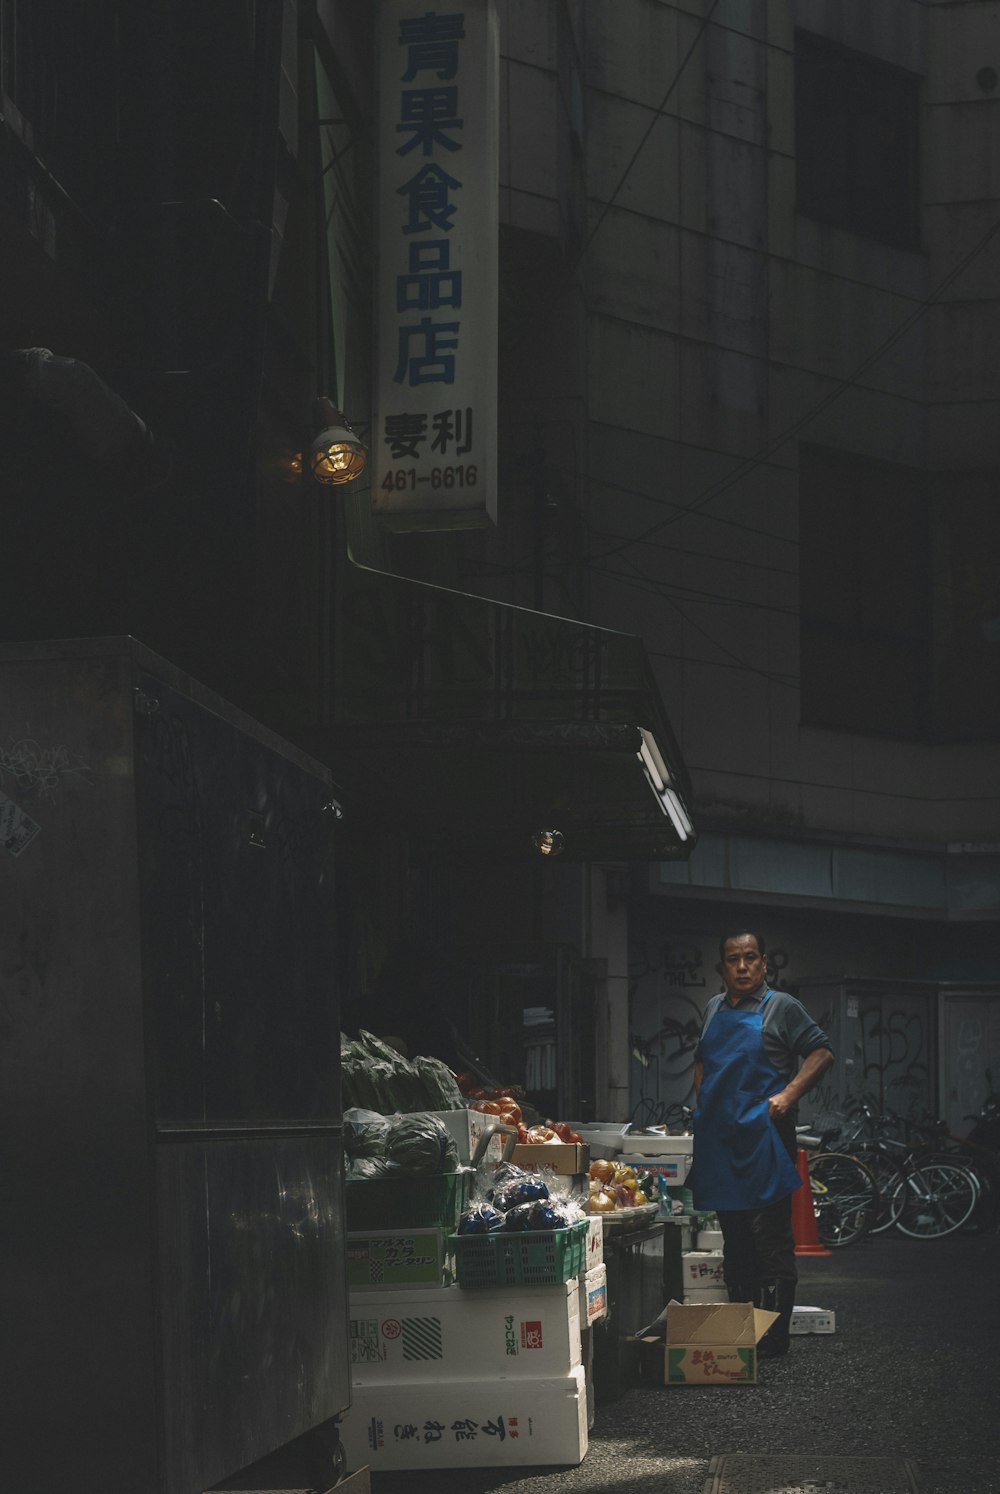 Homme en t-shirt rouge et jean bleu debout près d’un stand de nourriture pendant la nuit